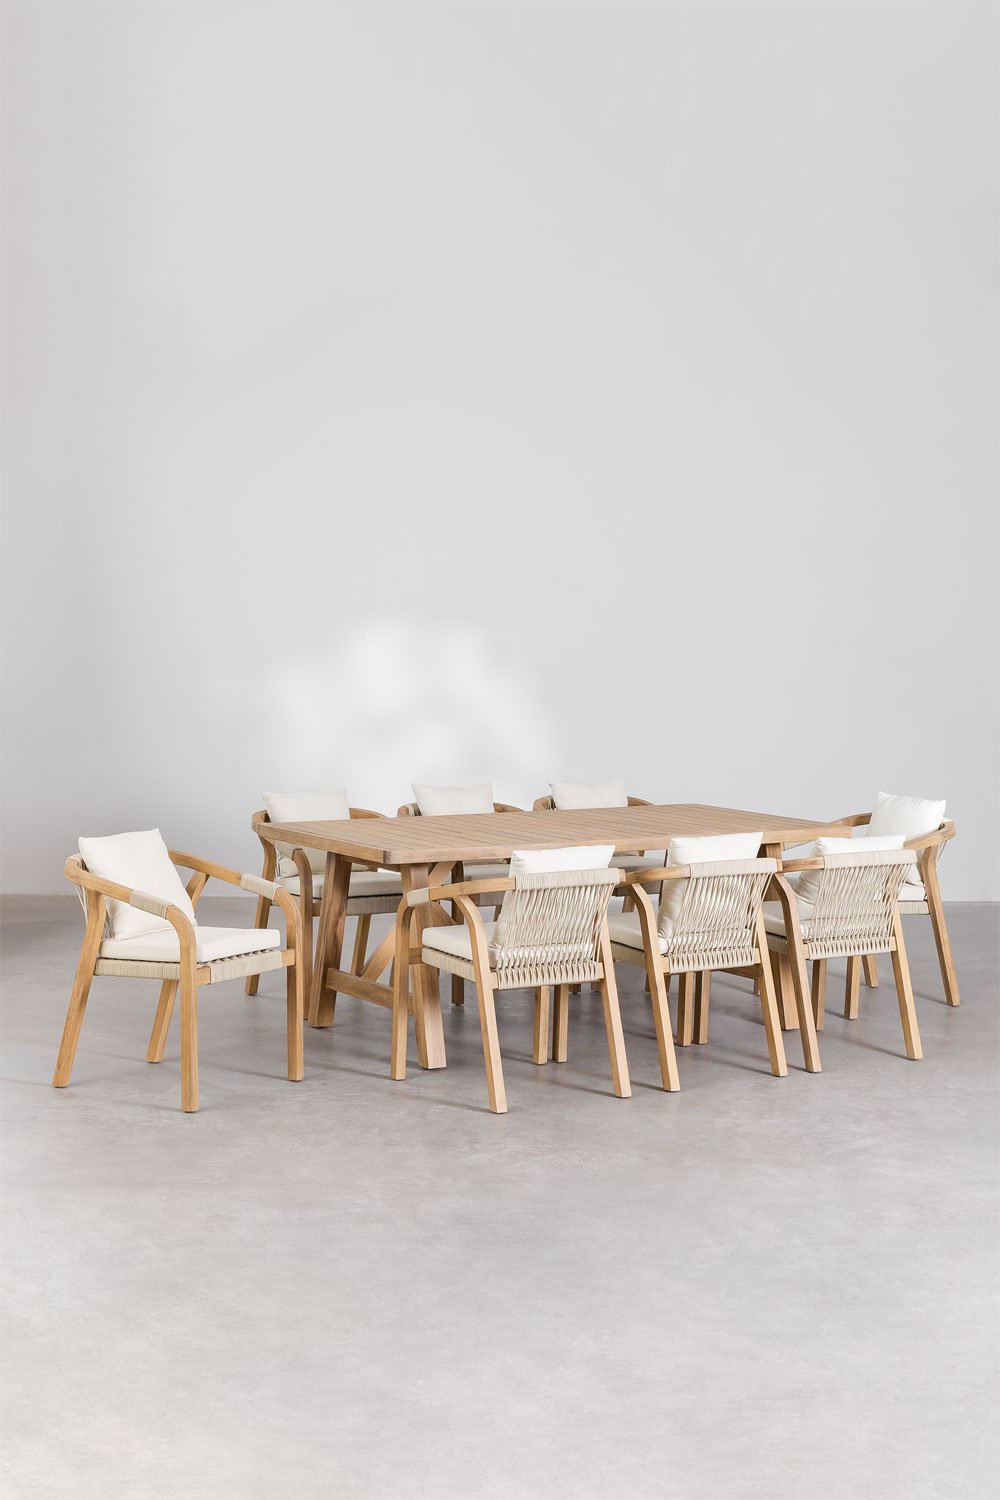 Set van rechthoekige tafel (200x100 cm) en 8 eetkamerstoelen van acaciahout Dubai , galerij beeld 1